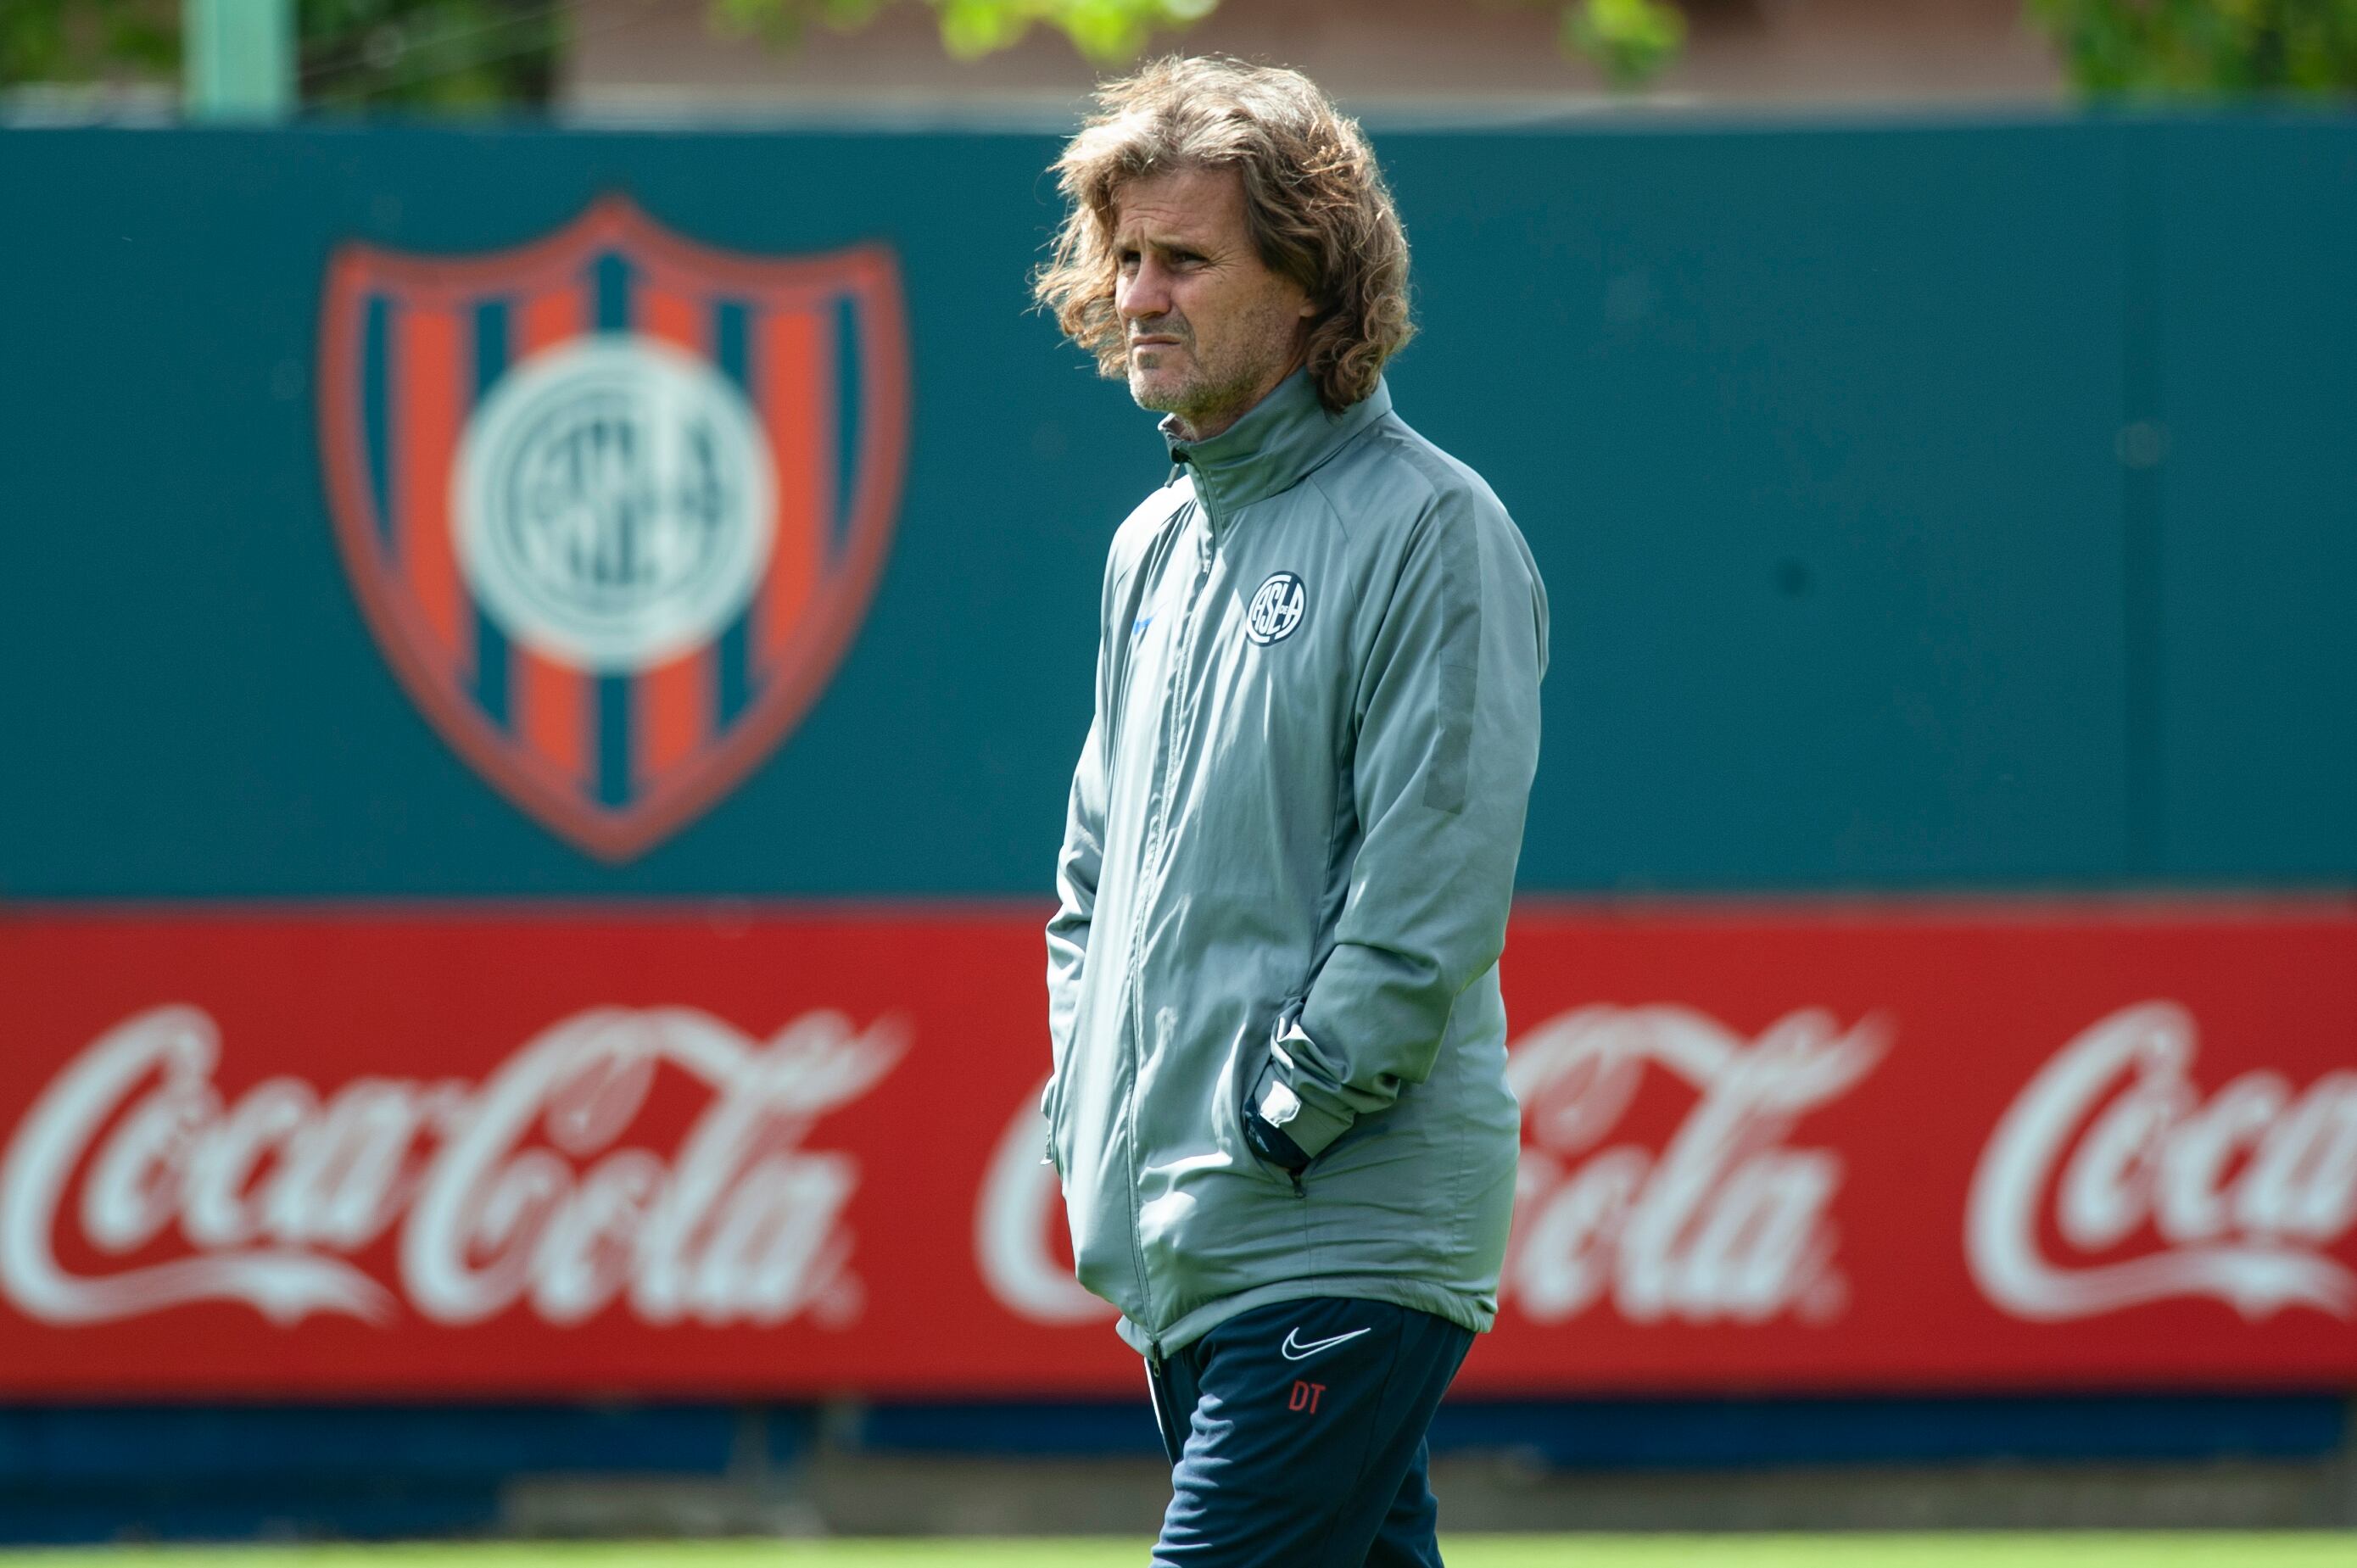 Marcelo Moretti criticó en duros términos a Rubén Darío Insua tras su salida como director técnico de San Lorenzo